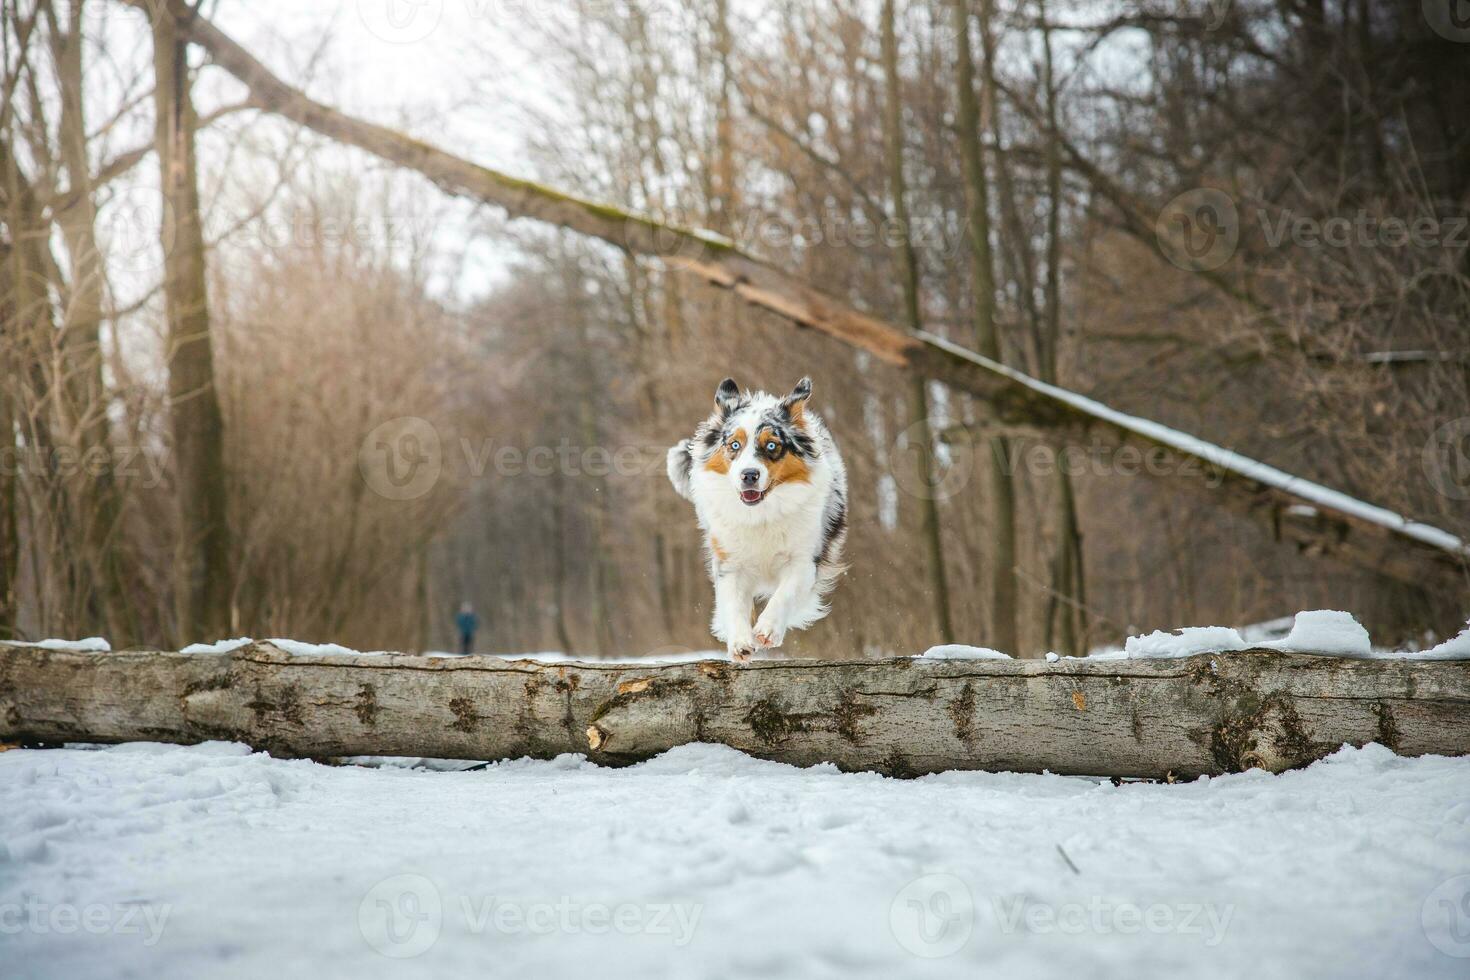 zuiver geluk van een Australisch herder puppy jumping over- een gedaald boom in een besneeuwd Woud gedurende december in de Tsjechisch republiek. detailopname van een hond jumping foto